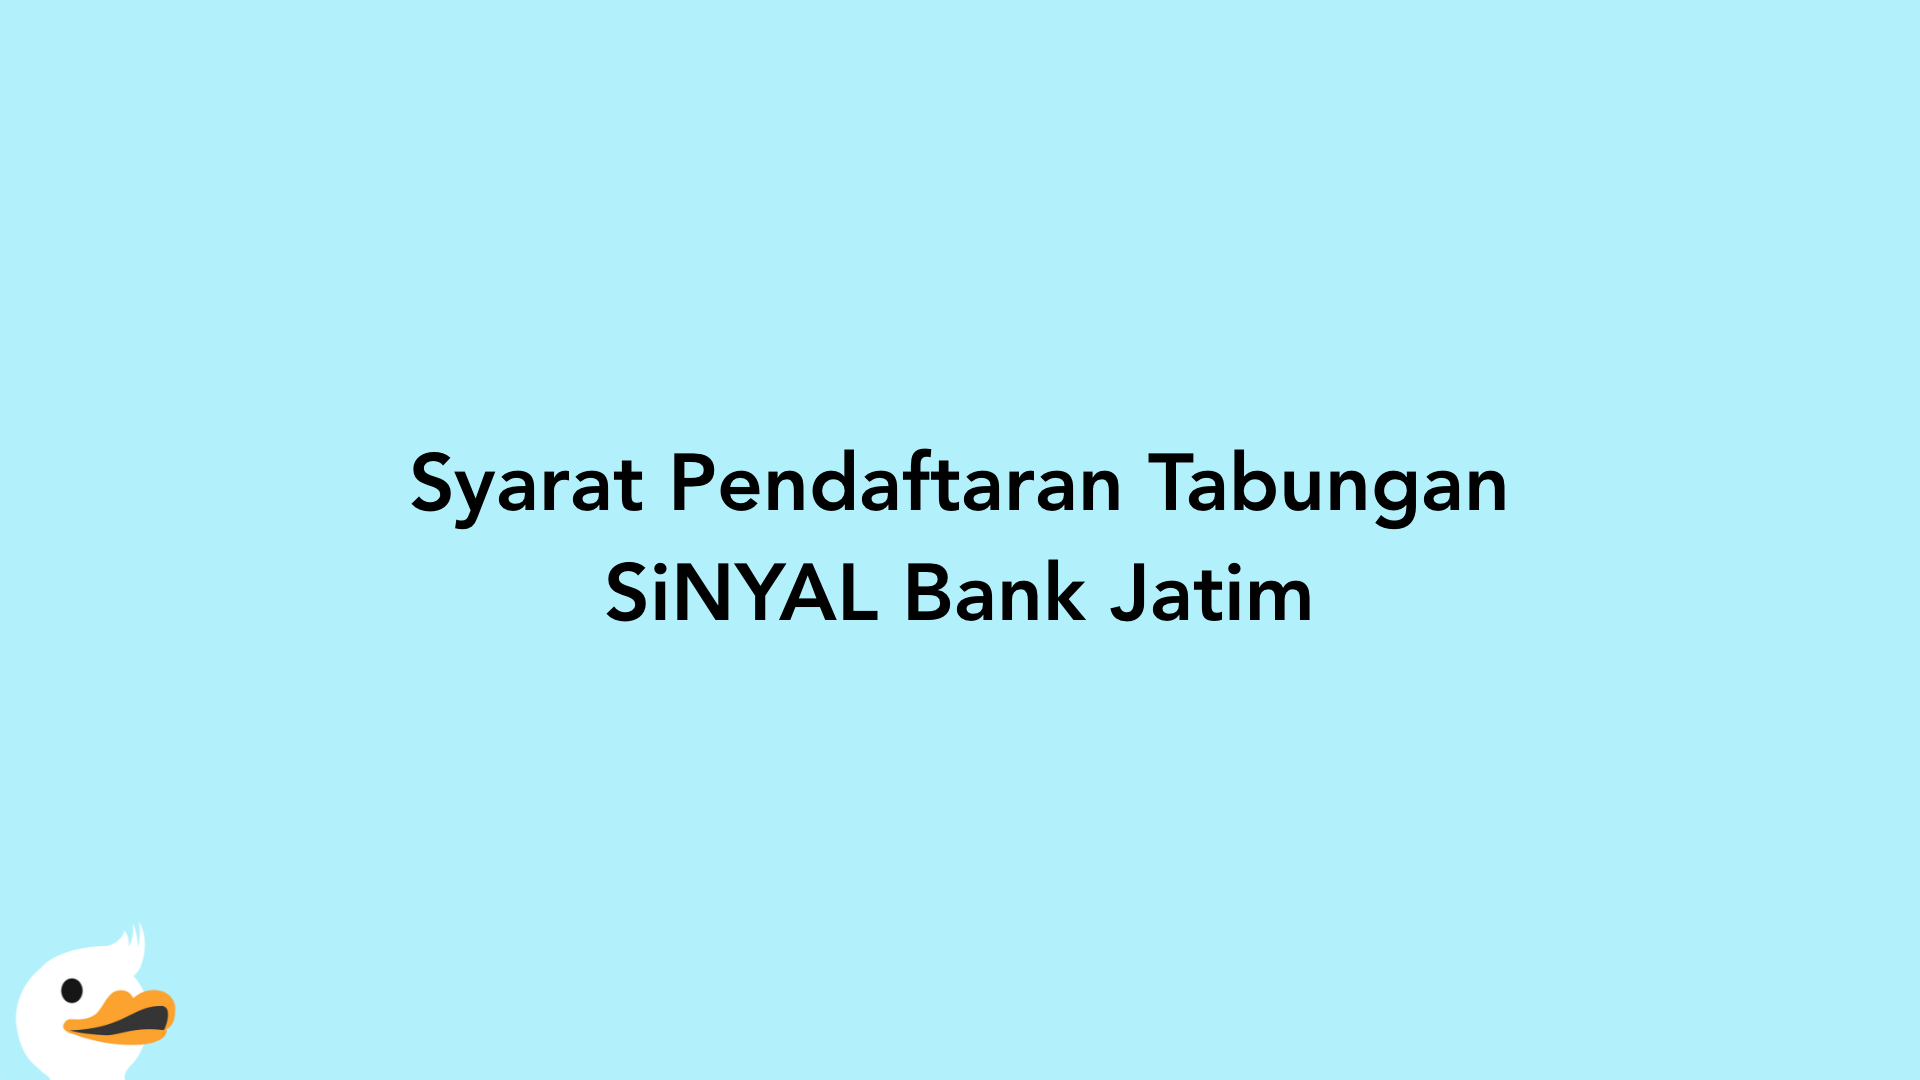 Syarat Pendaftaran Tabungan SiNYAL Bank Jatim